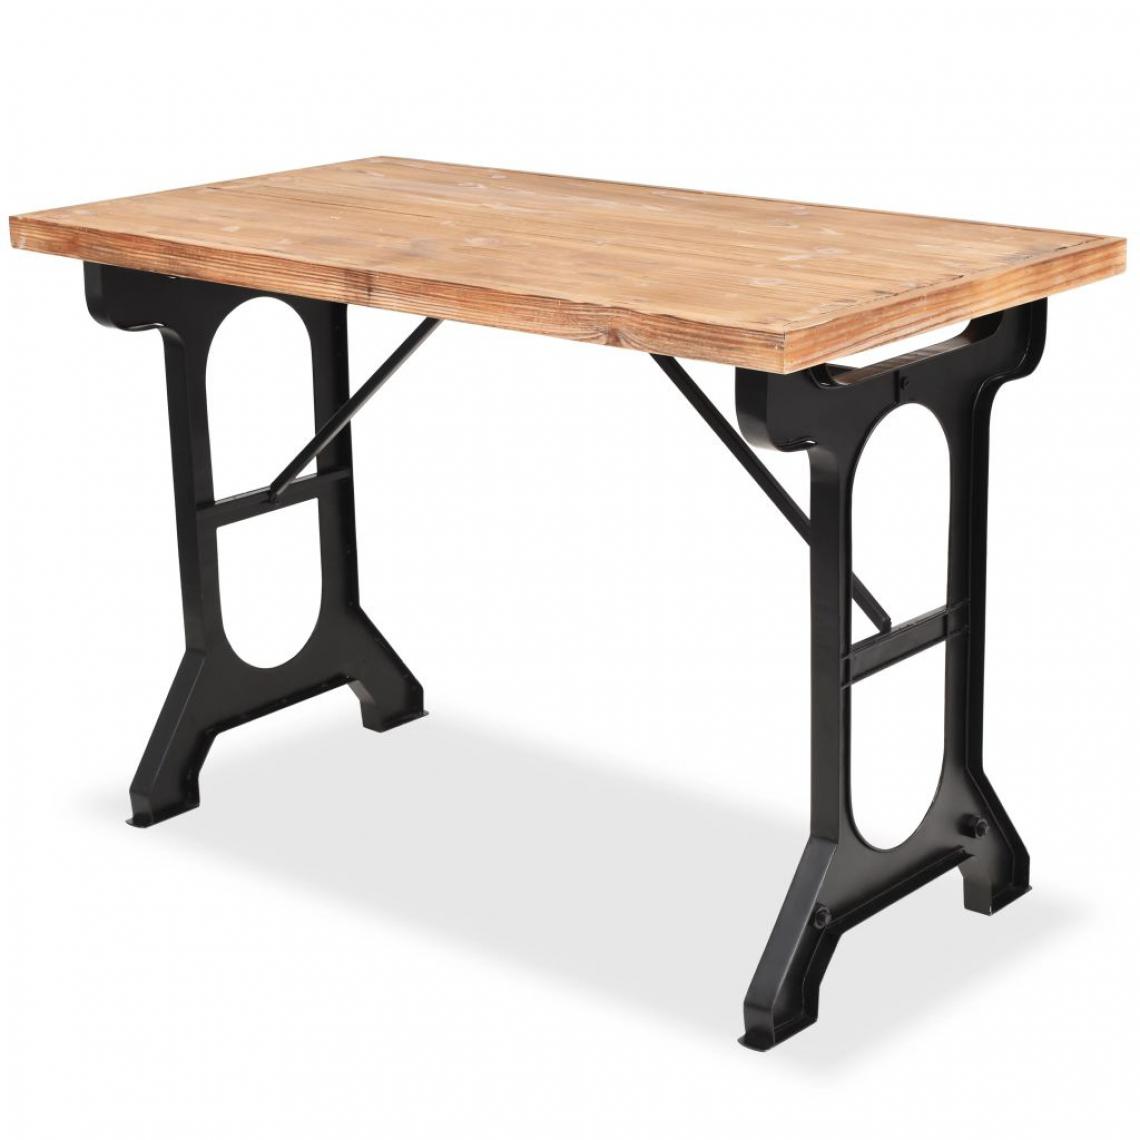 Chunhelife - Table de salle à manger Sapin massif Dessus de table en bois - Tables à manger